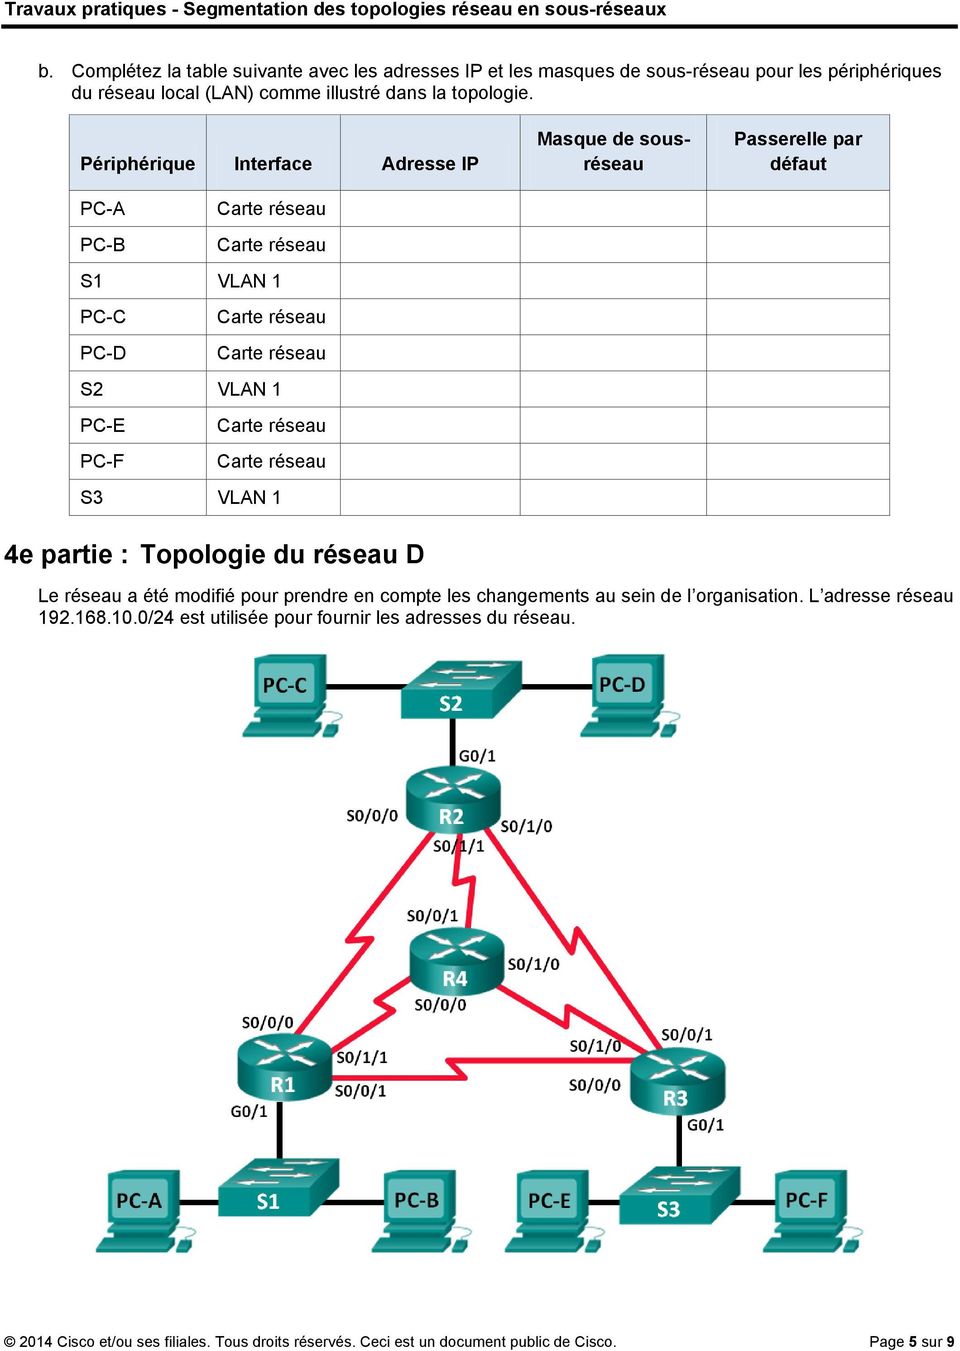 Périphérique Interface Adresse IP PC-A Carte réseau PC-B Carte réseau S VLAN PC-C Carte réseau PC-D Carte réseau S VLAN PC-E Carte réseau PC-F Carte réseau S VLAN e partie :